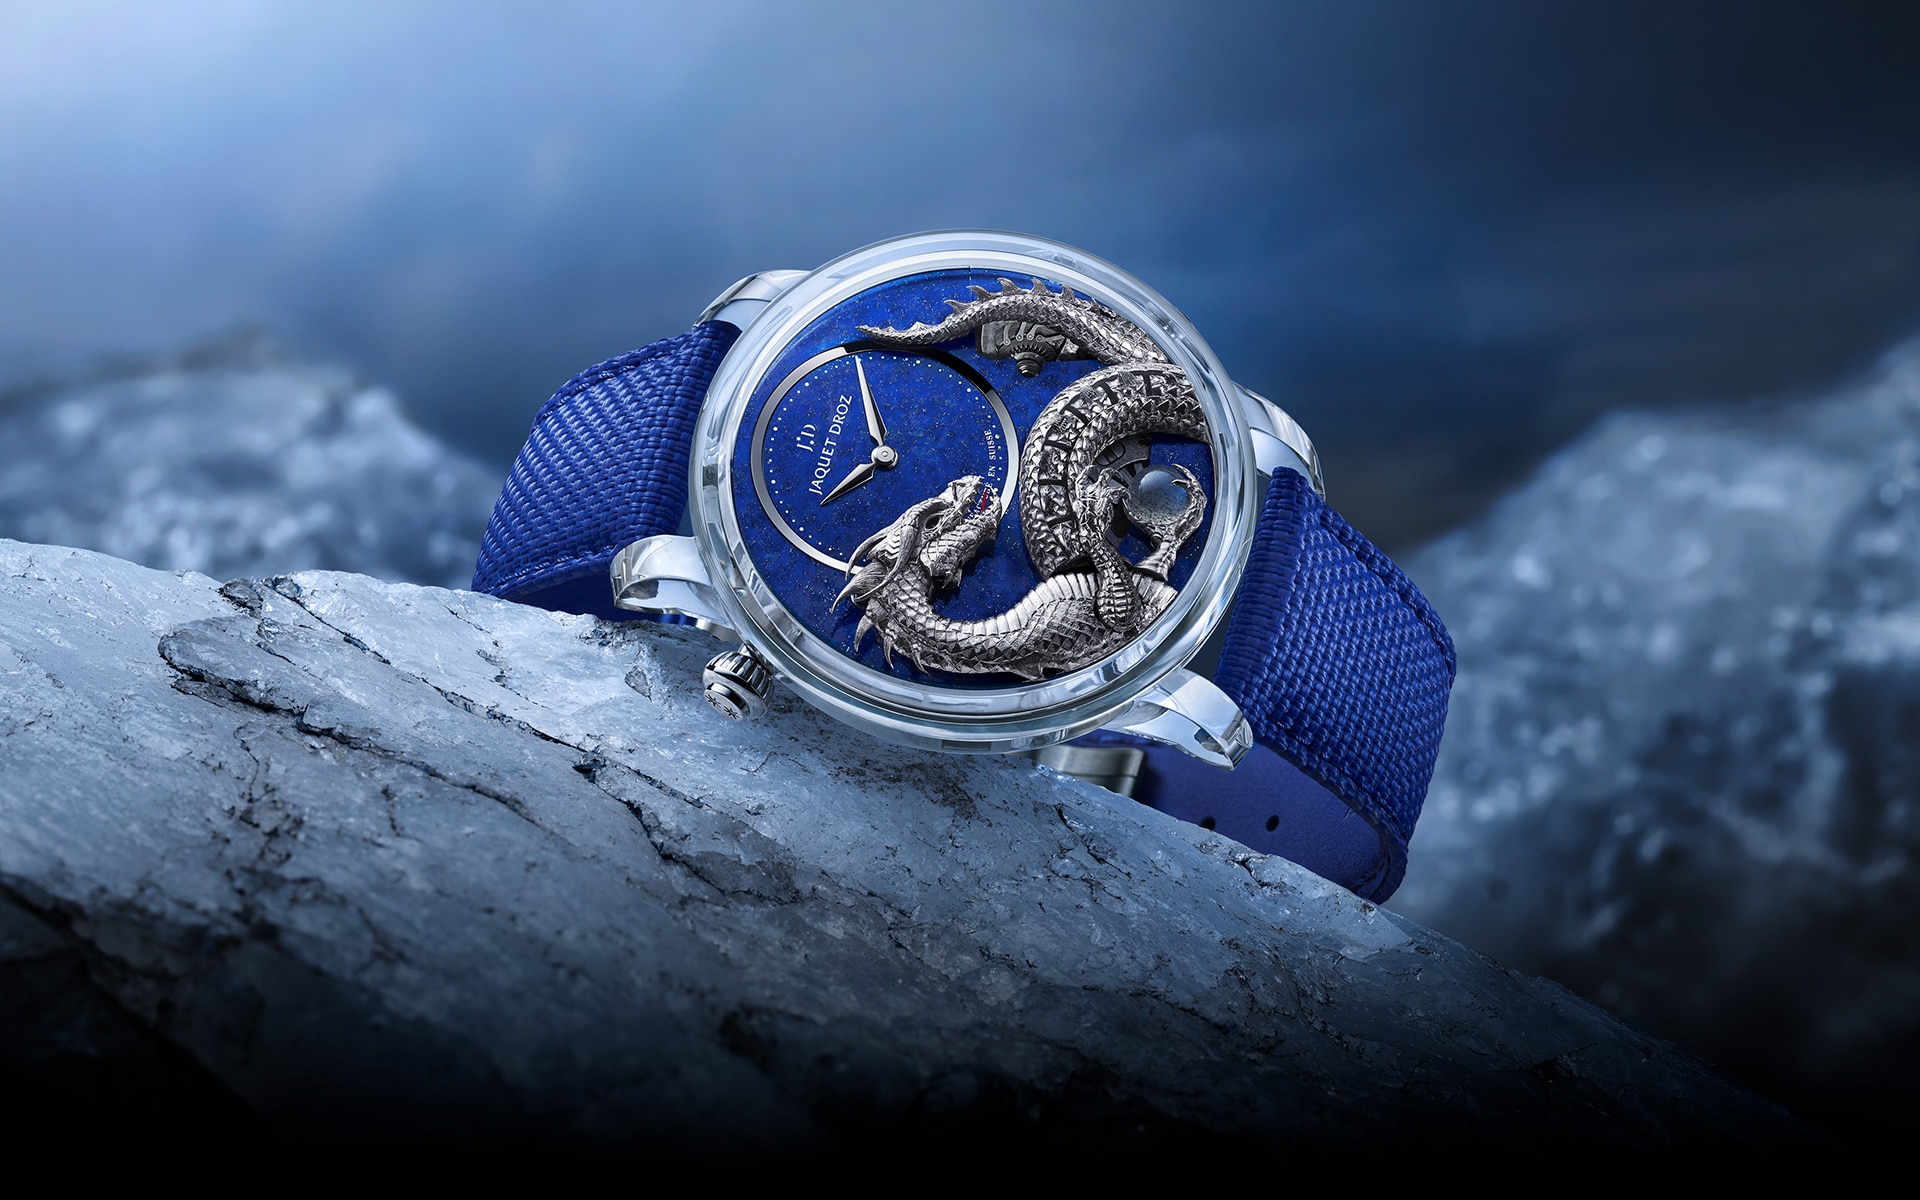 蓝宝石水晶云起龙骧自动玩偶-天青石<br>(Dragon Automaton Sapphire - Lapis Lazuli)